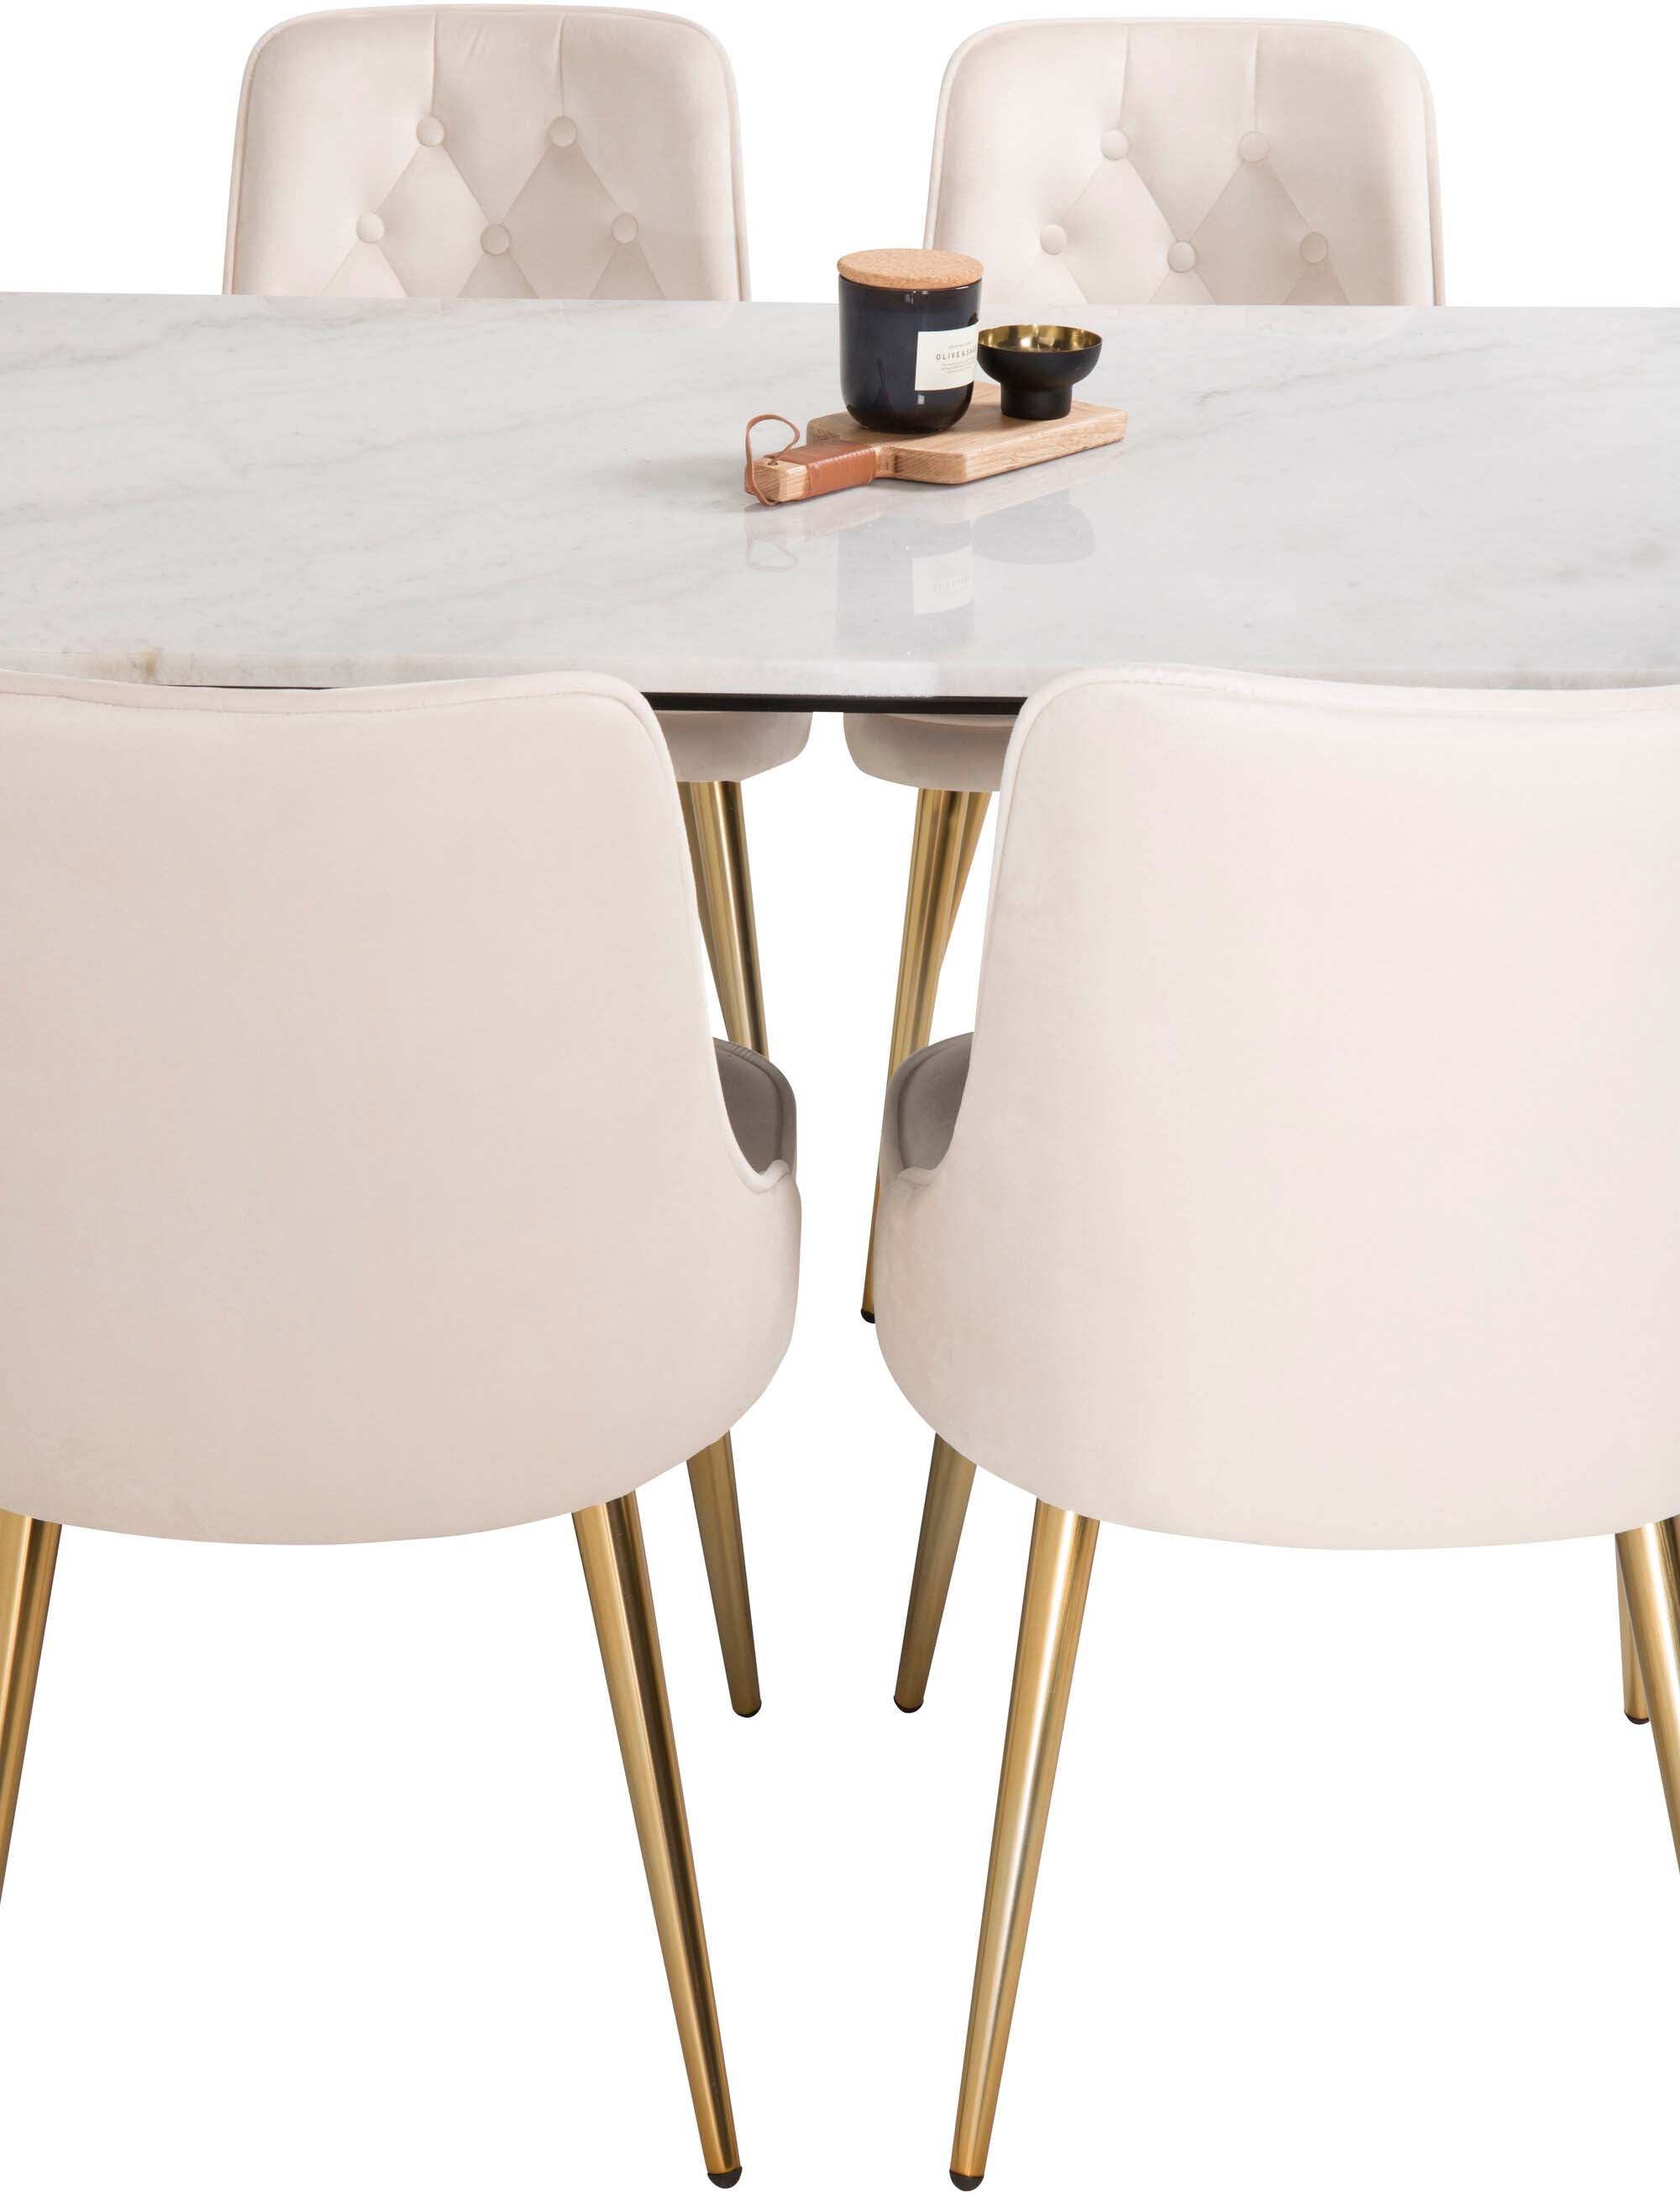 Estelle Esszimmerset + Velvet Deluxe 140cm/4St. in Beige, Gold präsentiert im Onlineshop von KAQTU Design AG. Esszimmerset ist von Venture Home